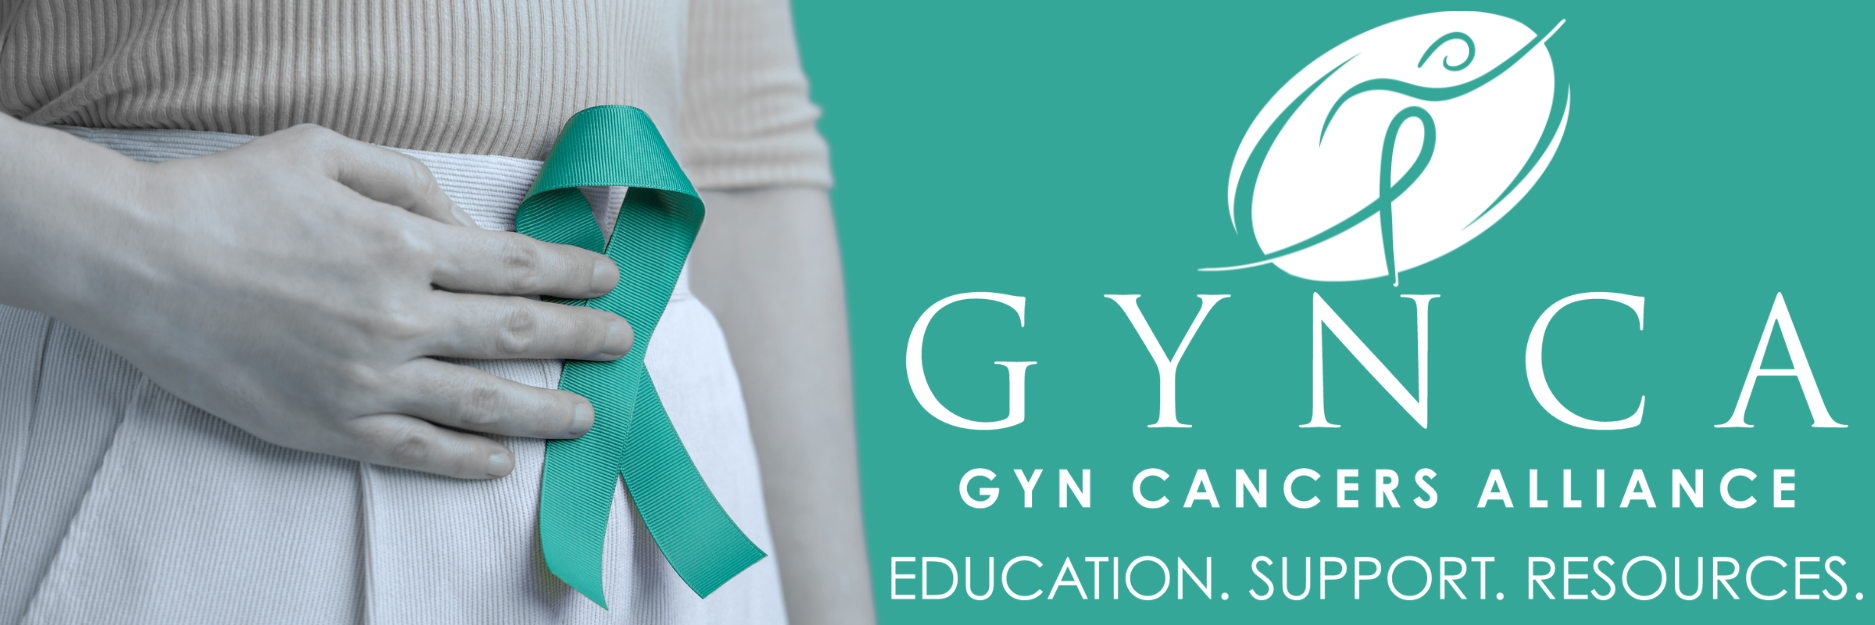 GYN Cancers Alliance (GYNCA)